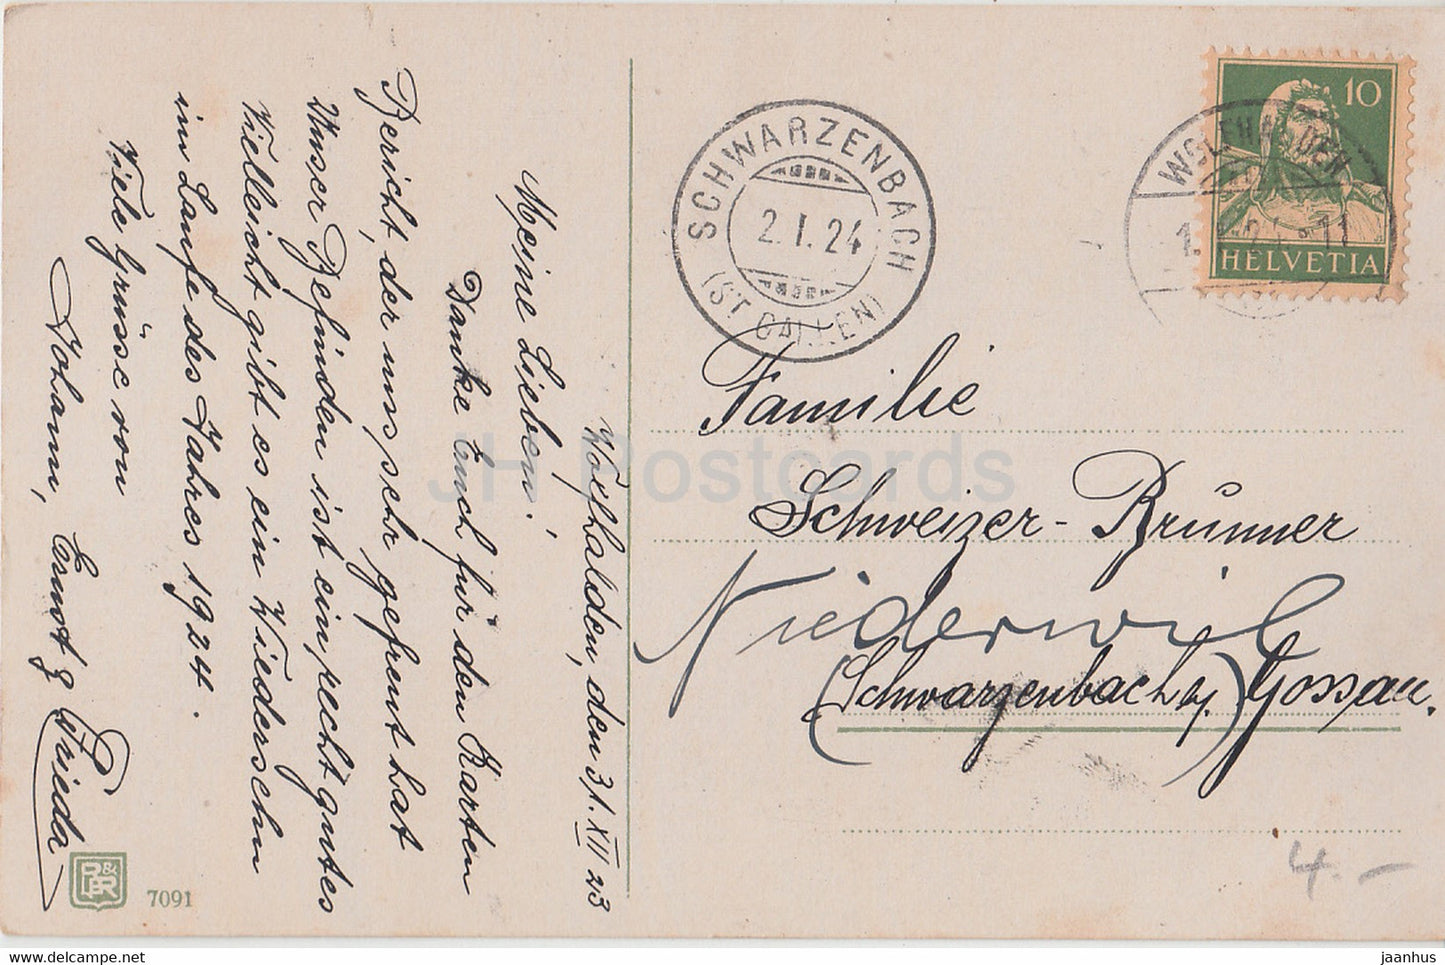 Neujahrsgrußkarte - Die besten Wünsche zum neuen Jahr - Glocken - BR 7091 - alte Postkarte - 1924 - Deutschland - gebraucht